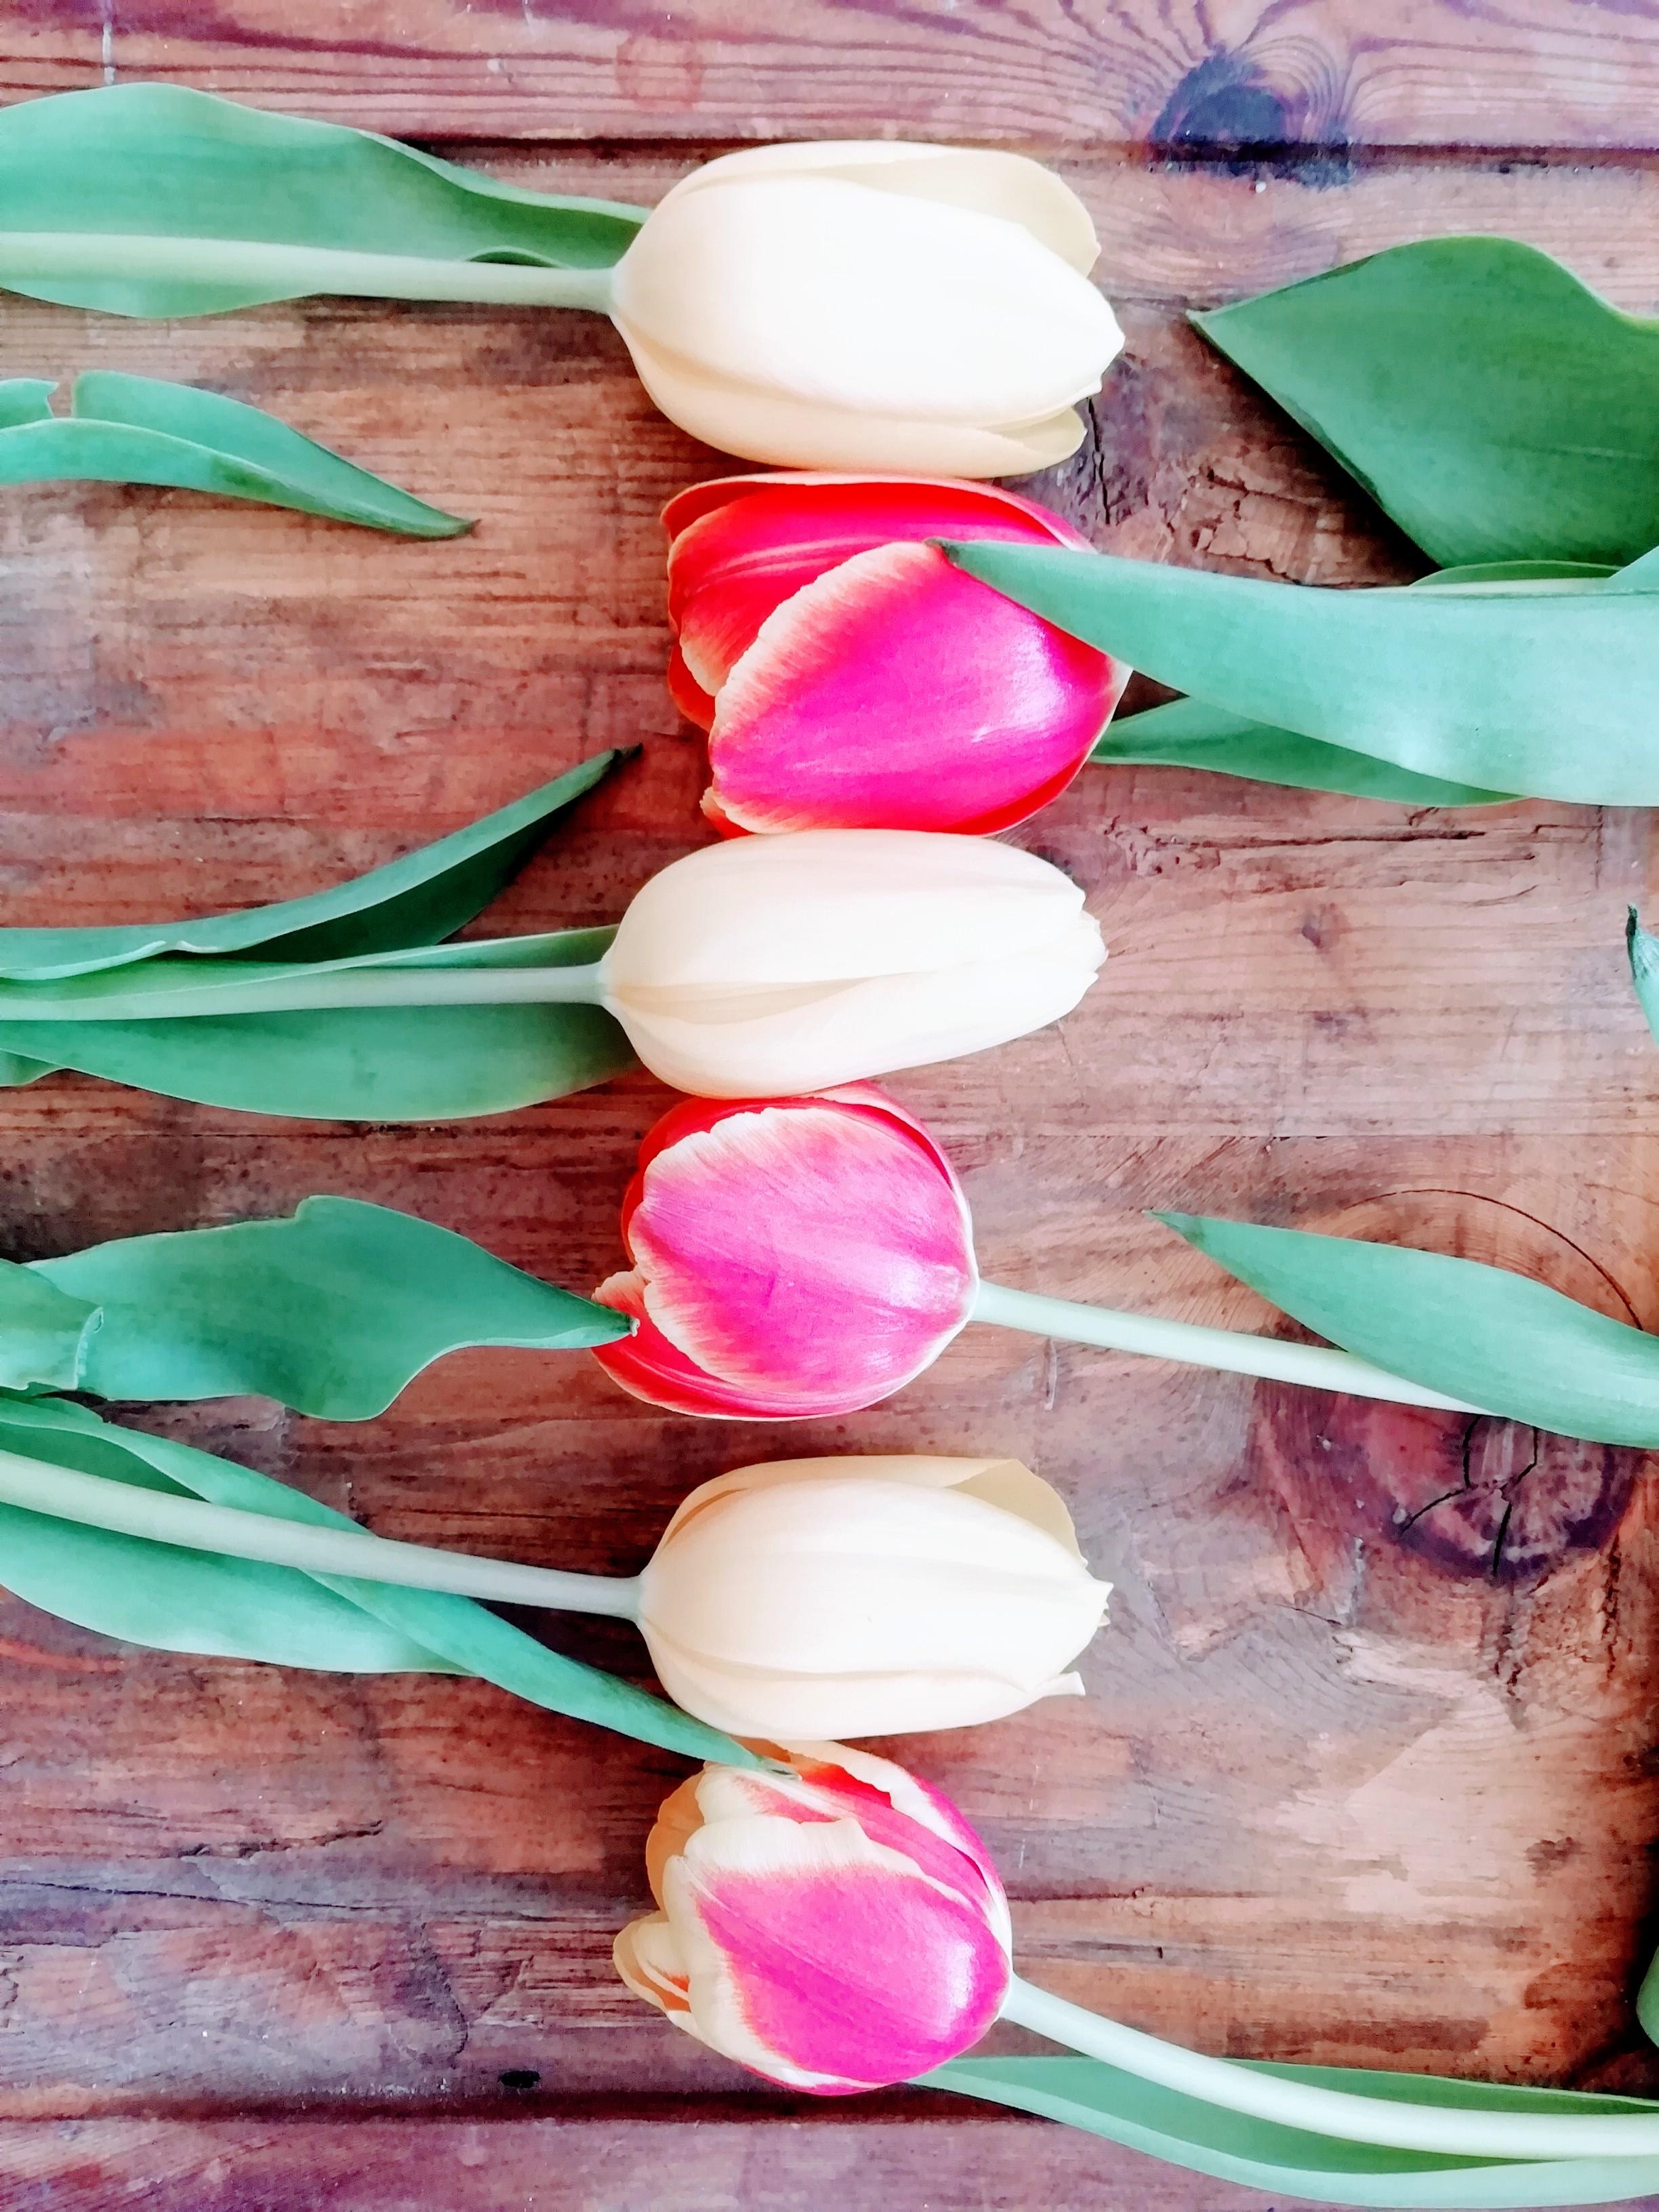 Auch ohne Vase ein Hingucker
#freshflowerfriday #Blumenliebe #Tulpen